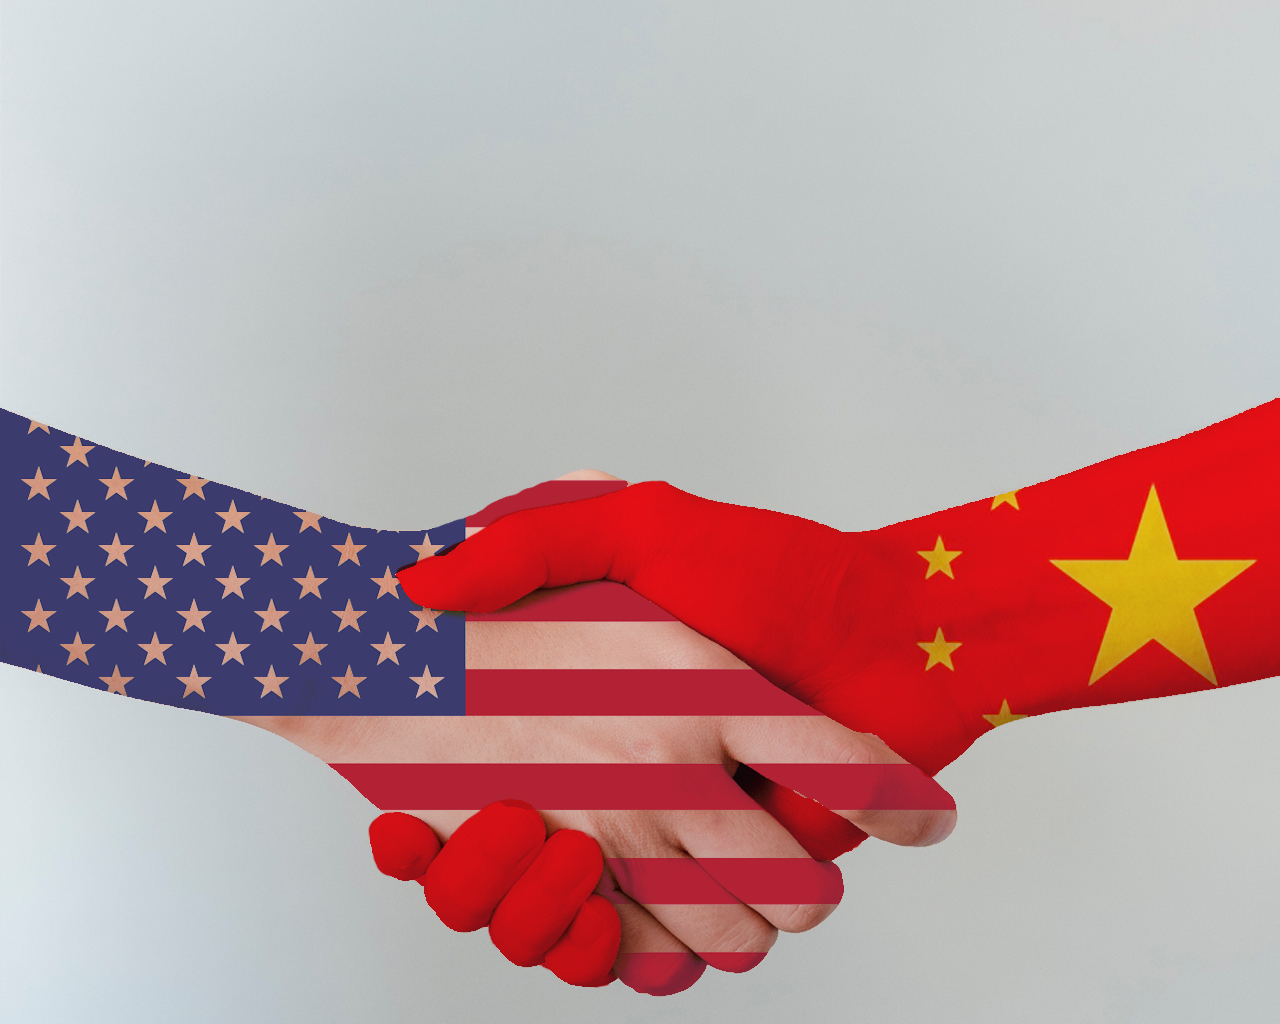 Może być zdjęciem przedstawiającym podawanie sobie wzajemne ręki, z jednej strony ręka przedstawia flagę Chin, z drugiej strony ręka przedstawia flagę USA